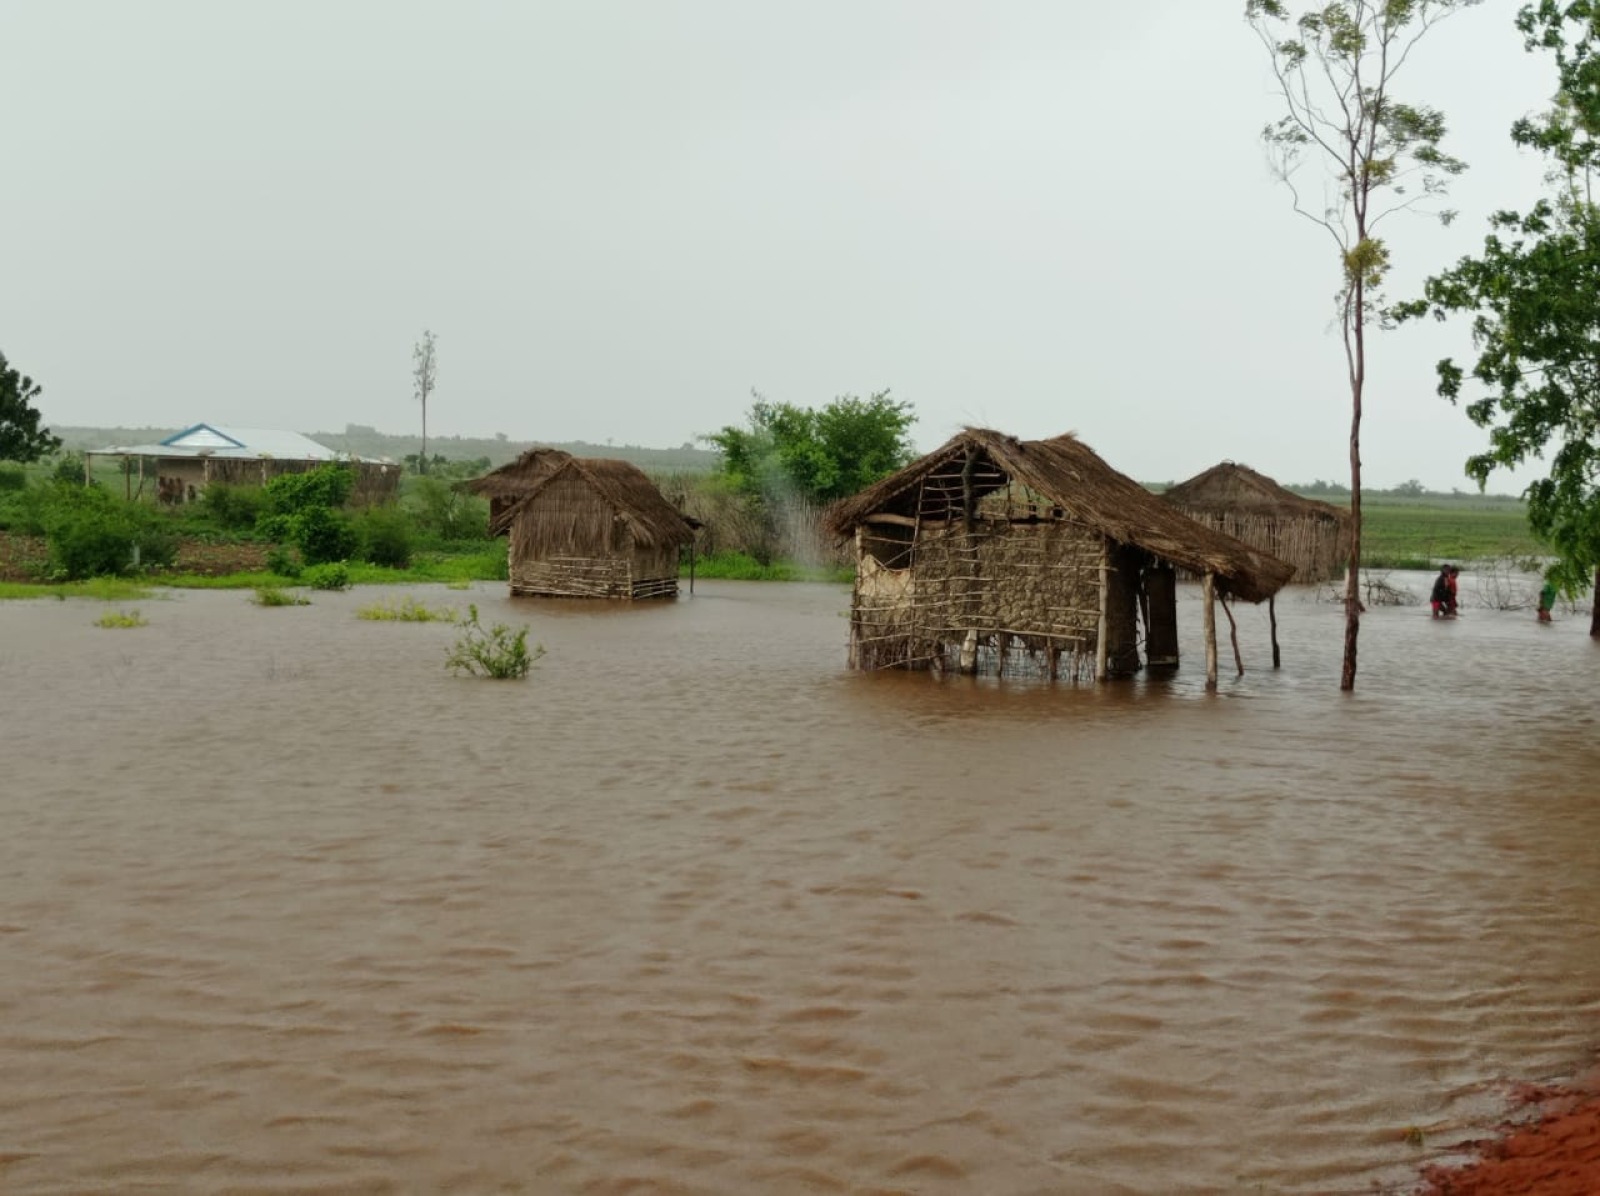 Dégâts causés par le cyclone Batsirai, dans la région d'Atsimo Andrefana, inondations à Analamisamp © HI